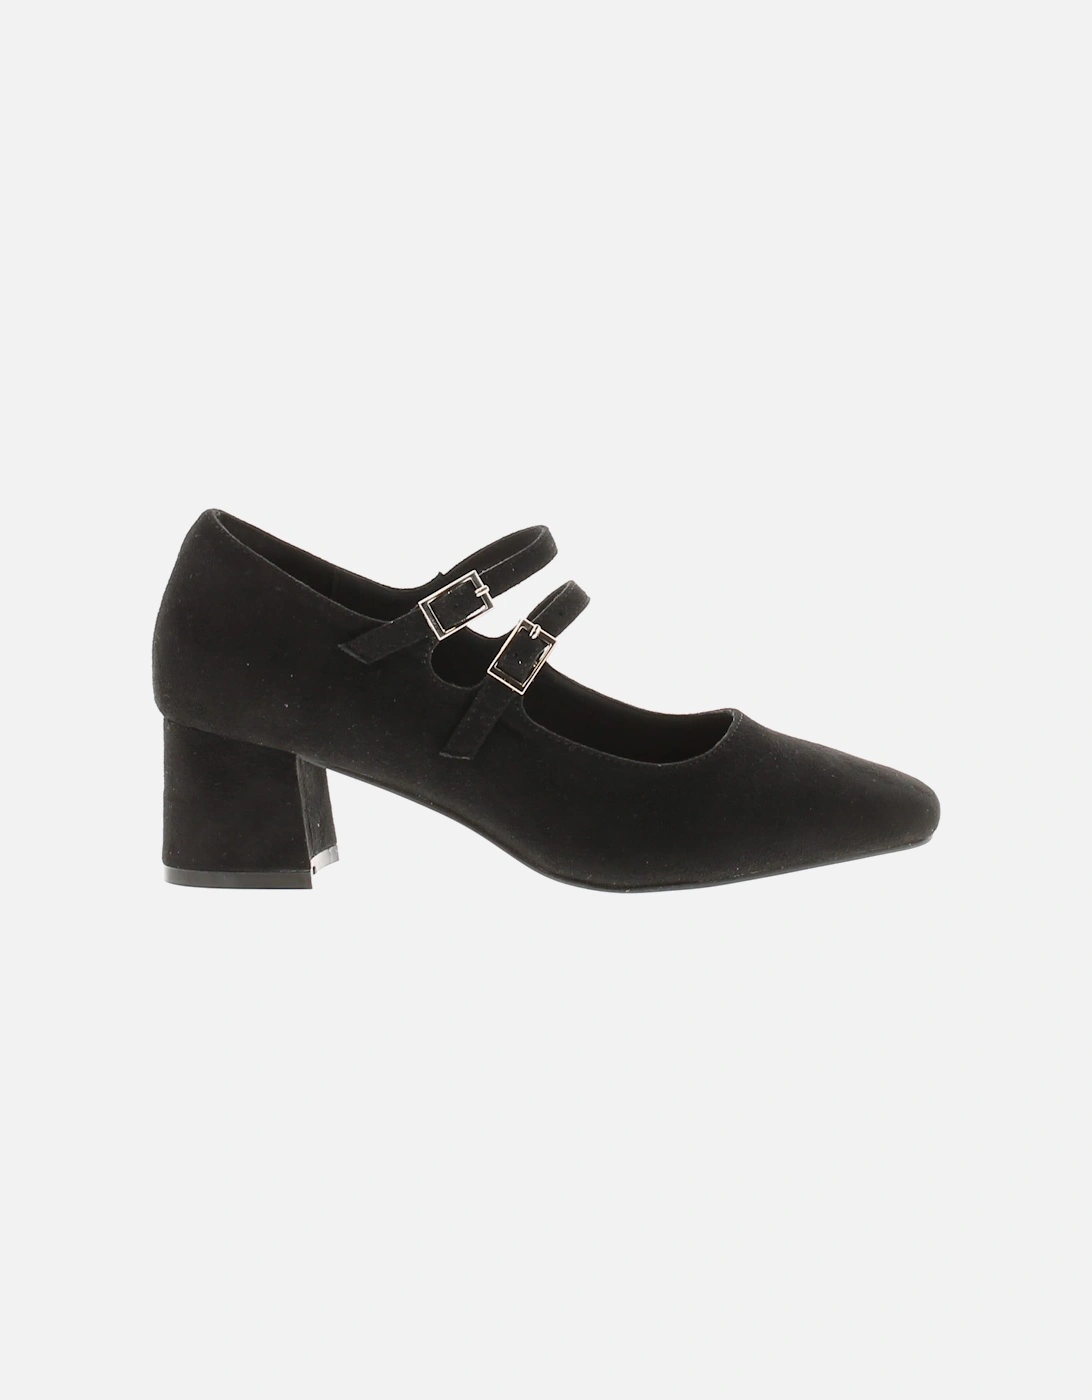 Womens Court Shoes Bustle Buckle black microfiber UK Size